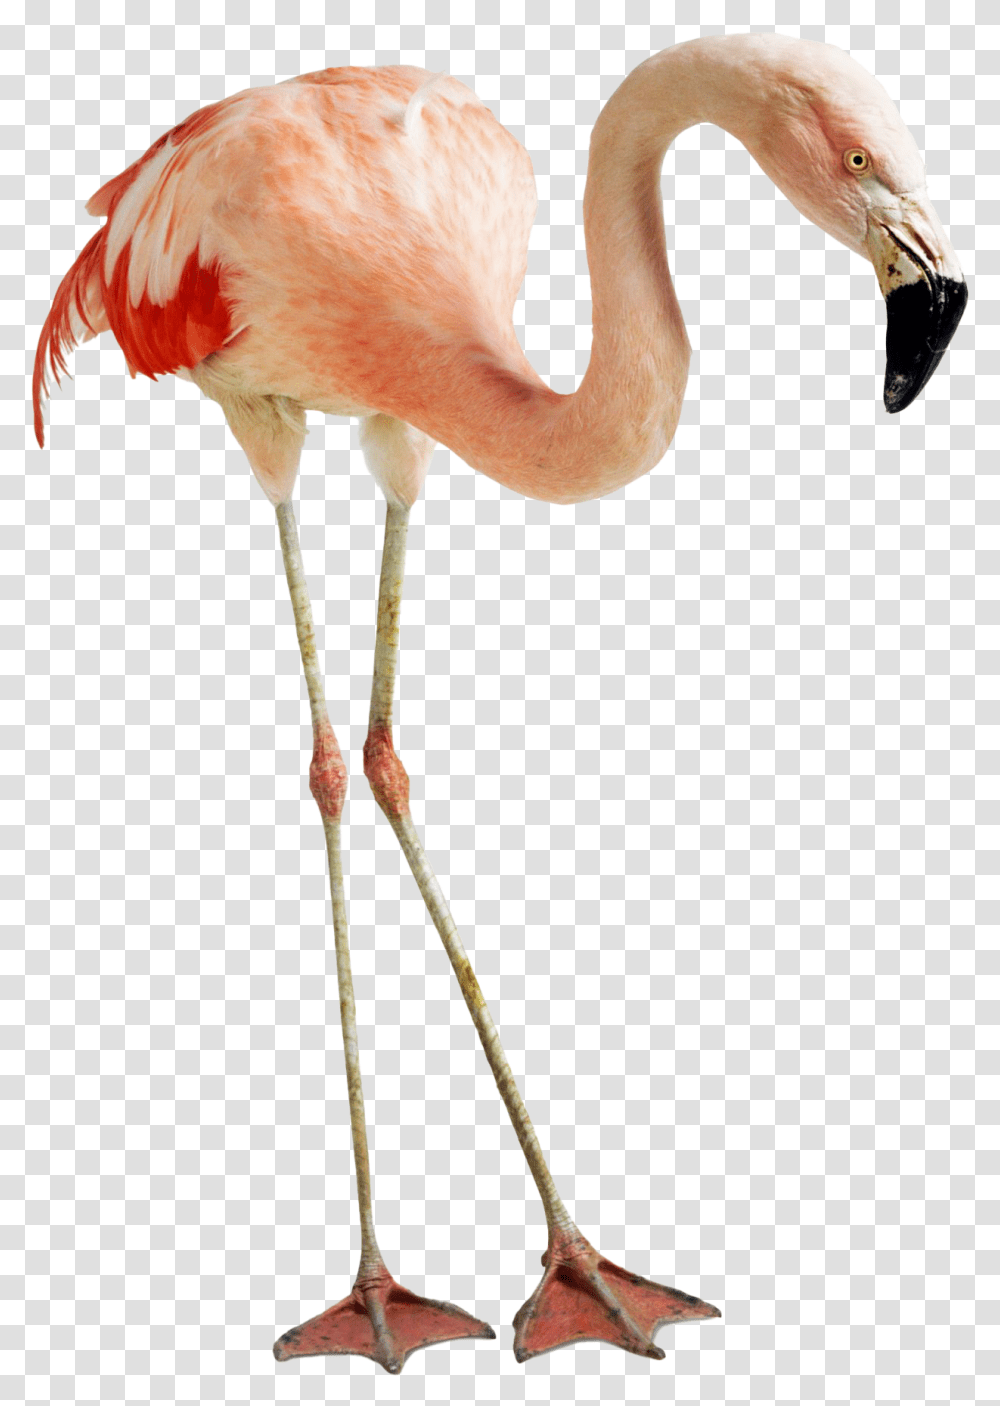 Flamingo Photos Feet And Beak Of Flamingo, Bird, Animal Transparent Png